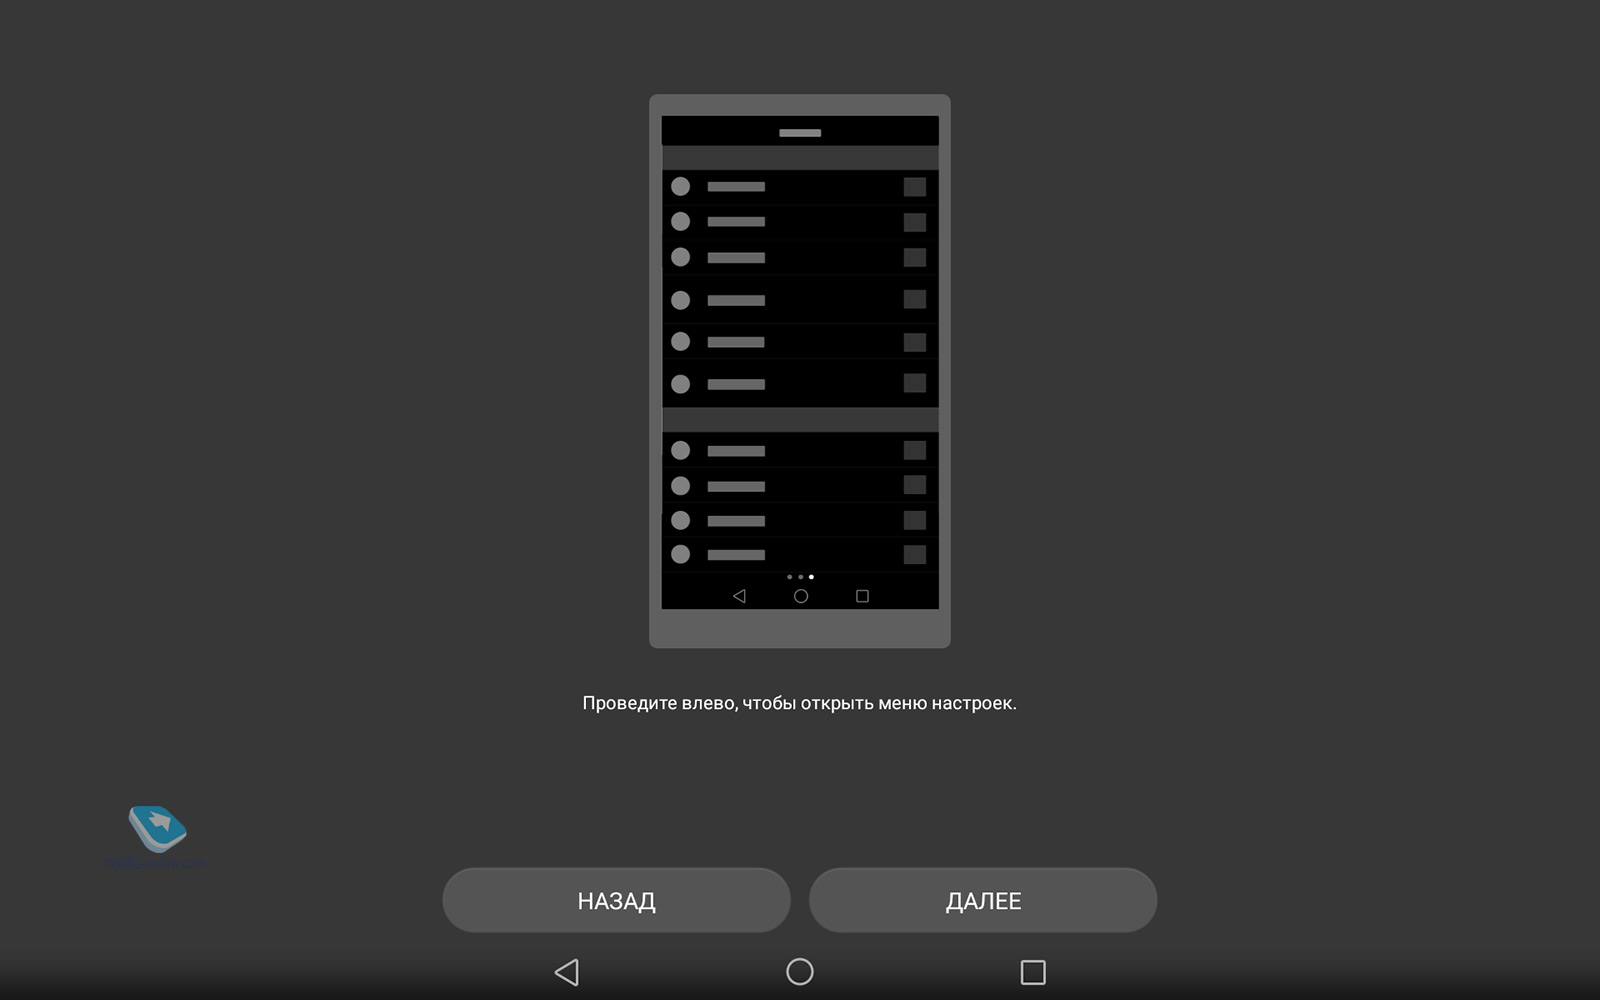 Какой андроид поддерживает планшет huawei mediapad fhd 10 и как прошить ссылку на huawei mediapad 10. Обновление до Android 11, 10, Pie 9, Oreo 8.1